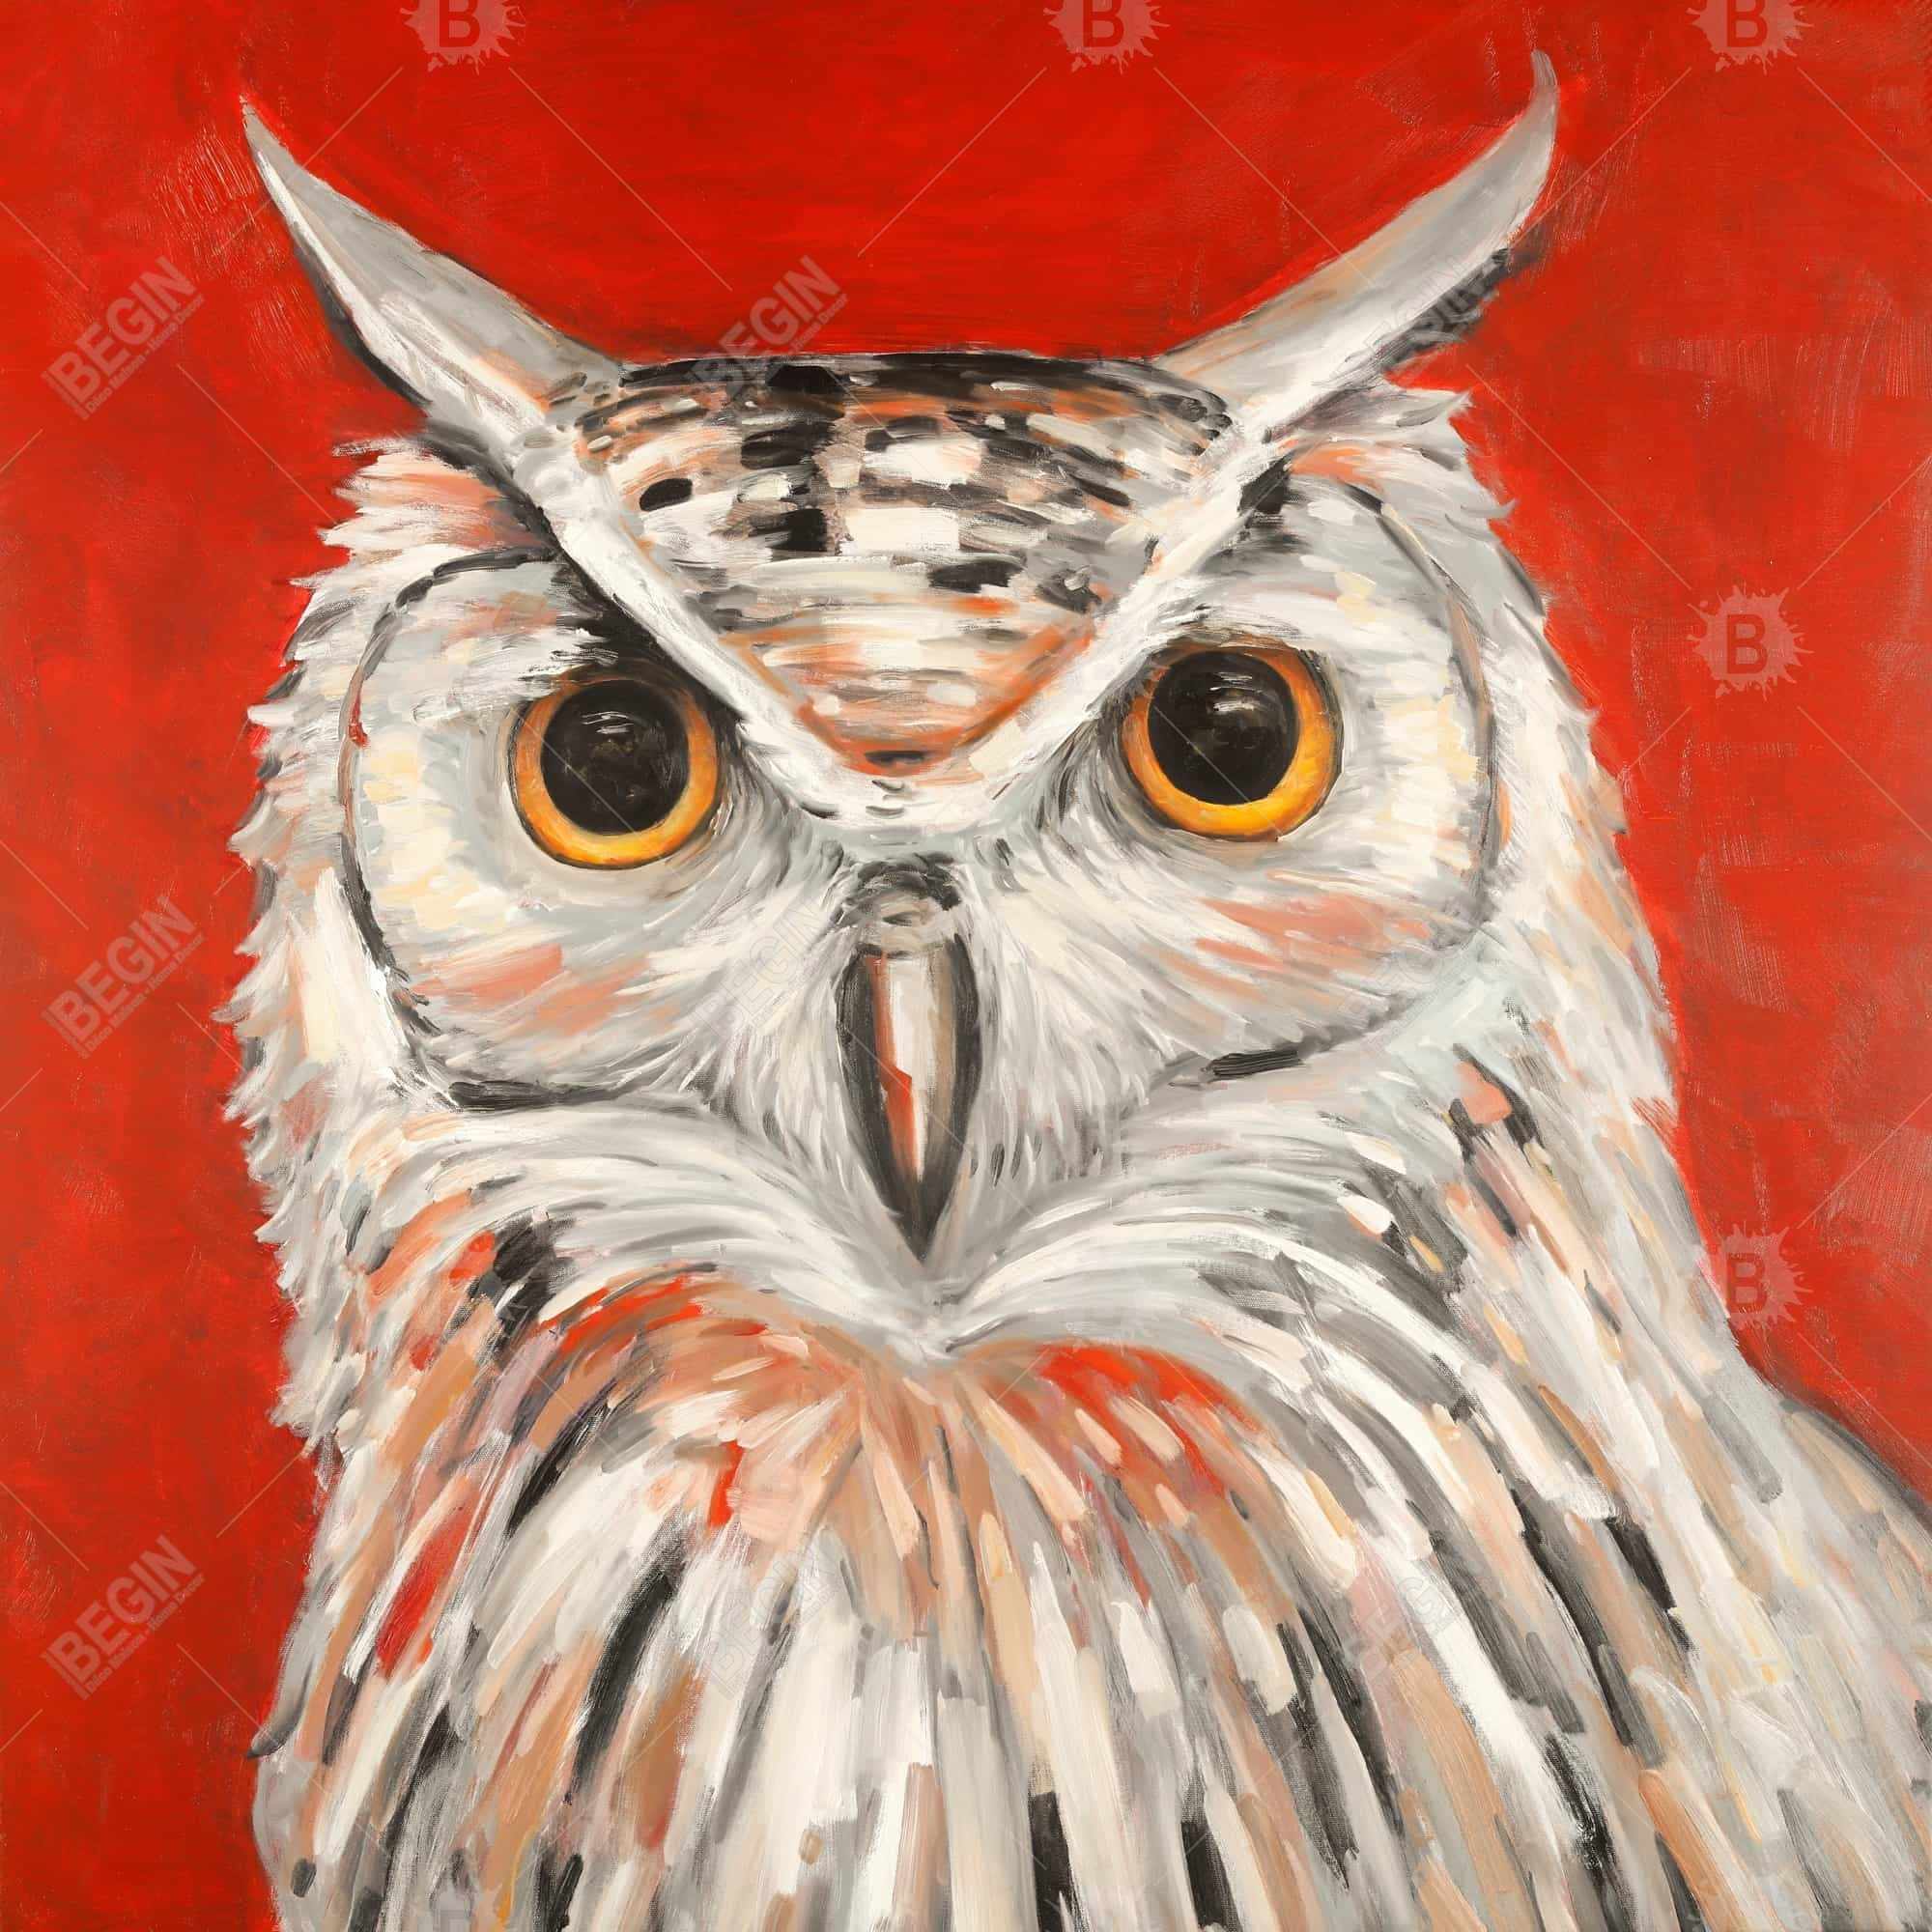 Colorful eagle owl